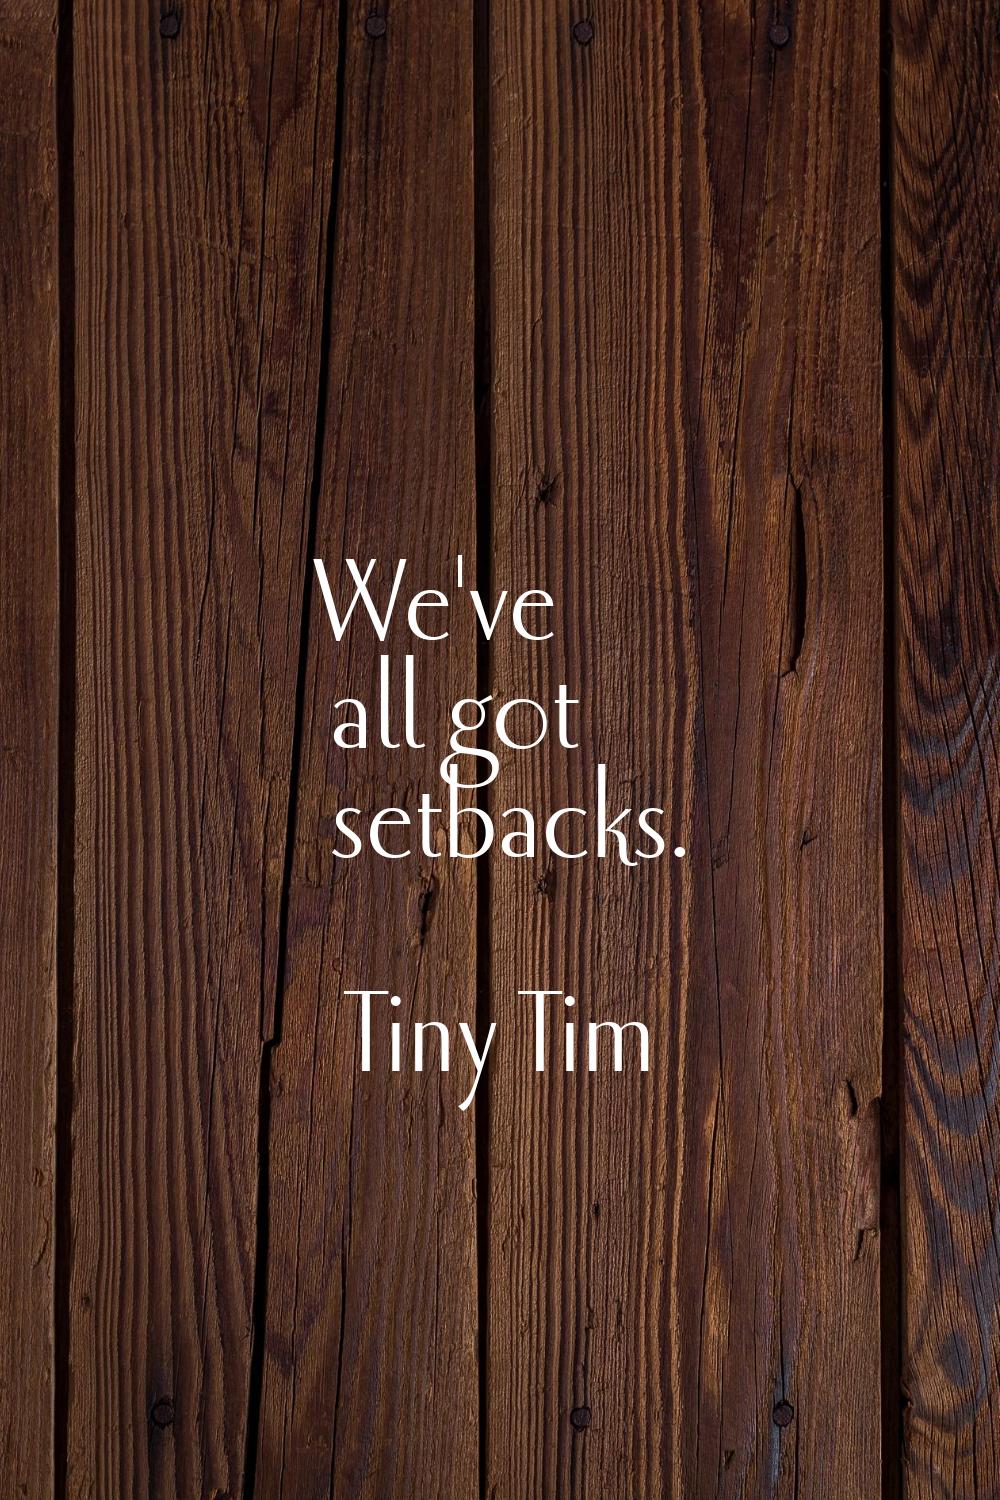 We've all got setbacks.